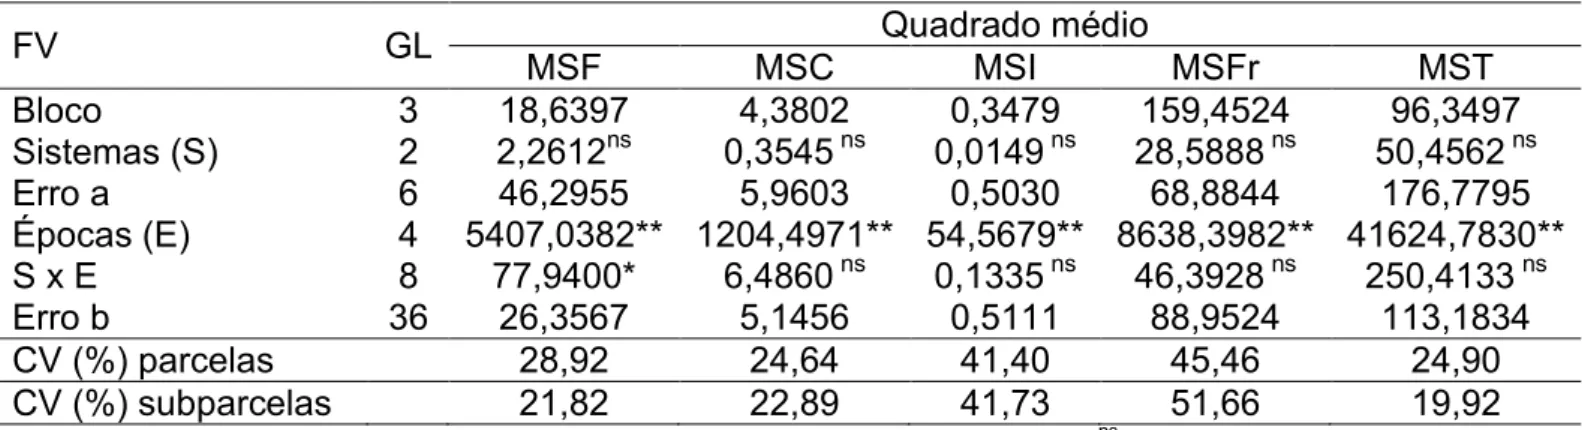 Tabela  1  -  Resumo  da  análise  de  variância  das  características  Matéria  Seca  de  Folha  (MSF),  Matéria  Seca  de  Caule  (MSC),  Matéria  Seca  de  Inflorescências  (MSI),  Matéria  Seca  de  Fruto  (MSFr)  e  Matéria  Seca  de  Total  (MST)  po